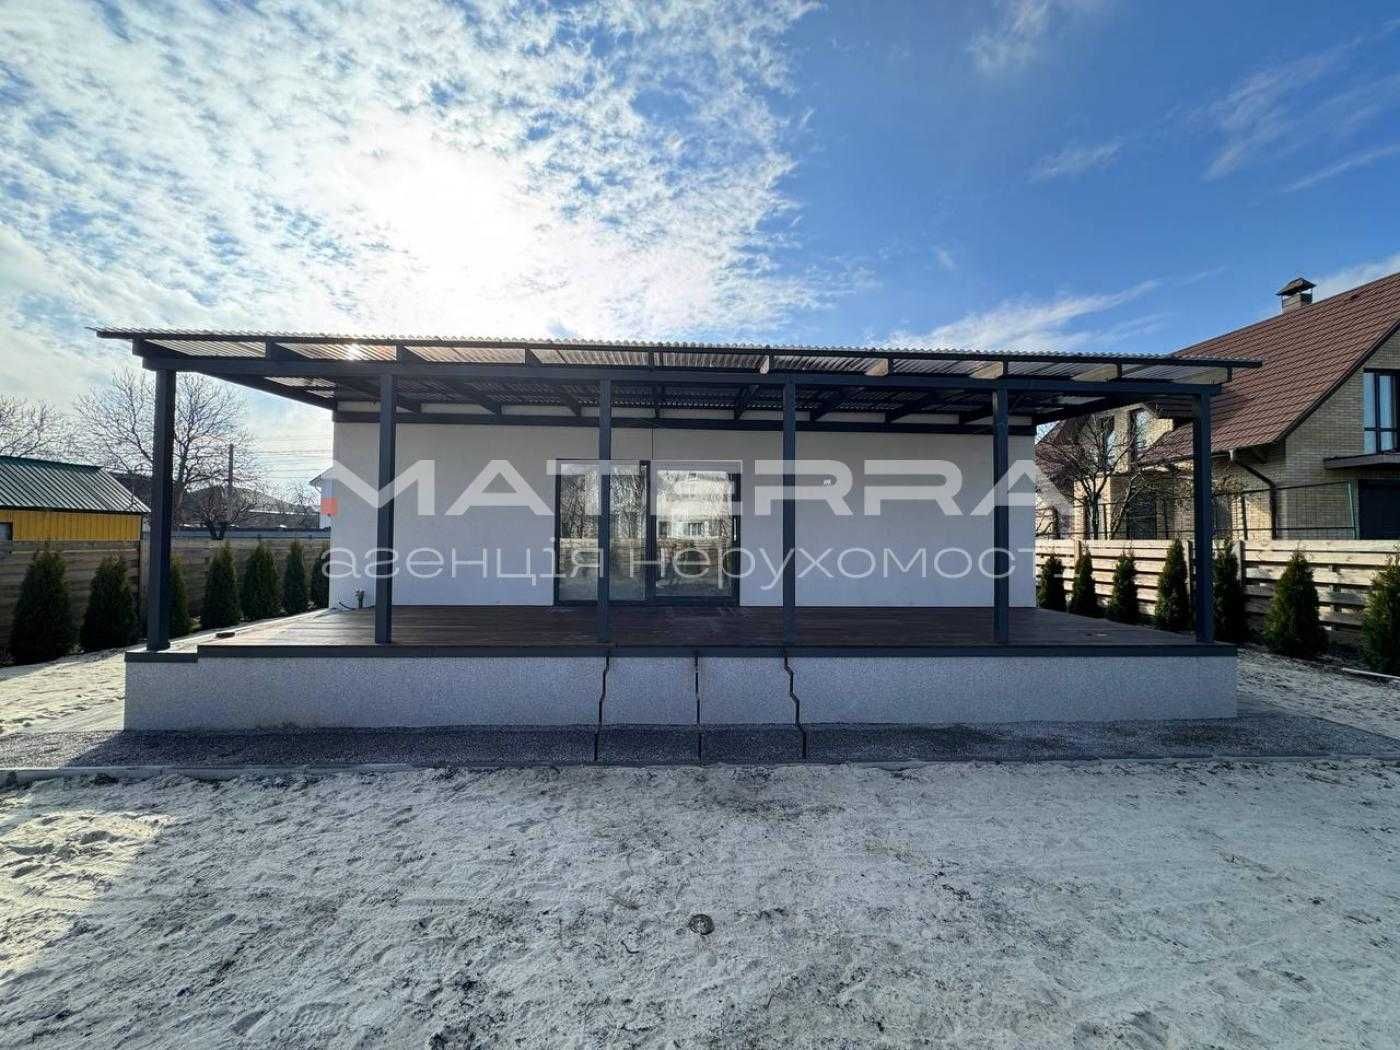 Нова Боярка Продаж будинку 93м2+30м тераса в центральній частині міста